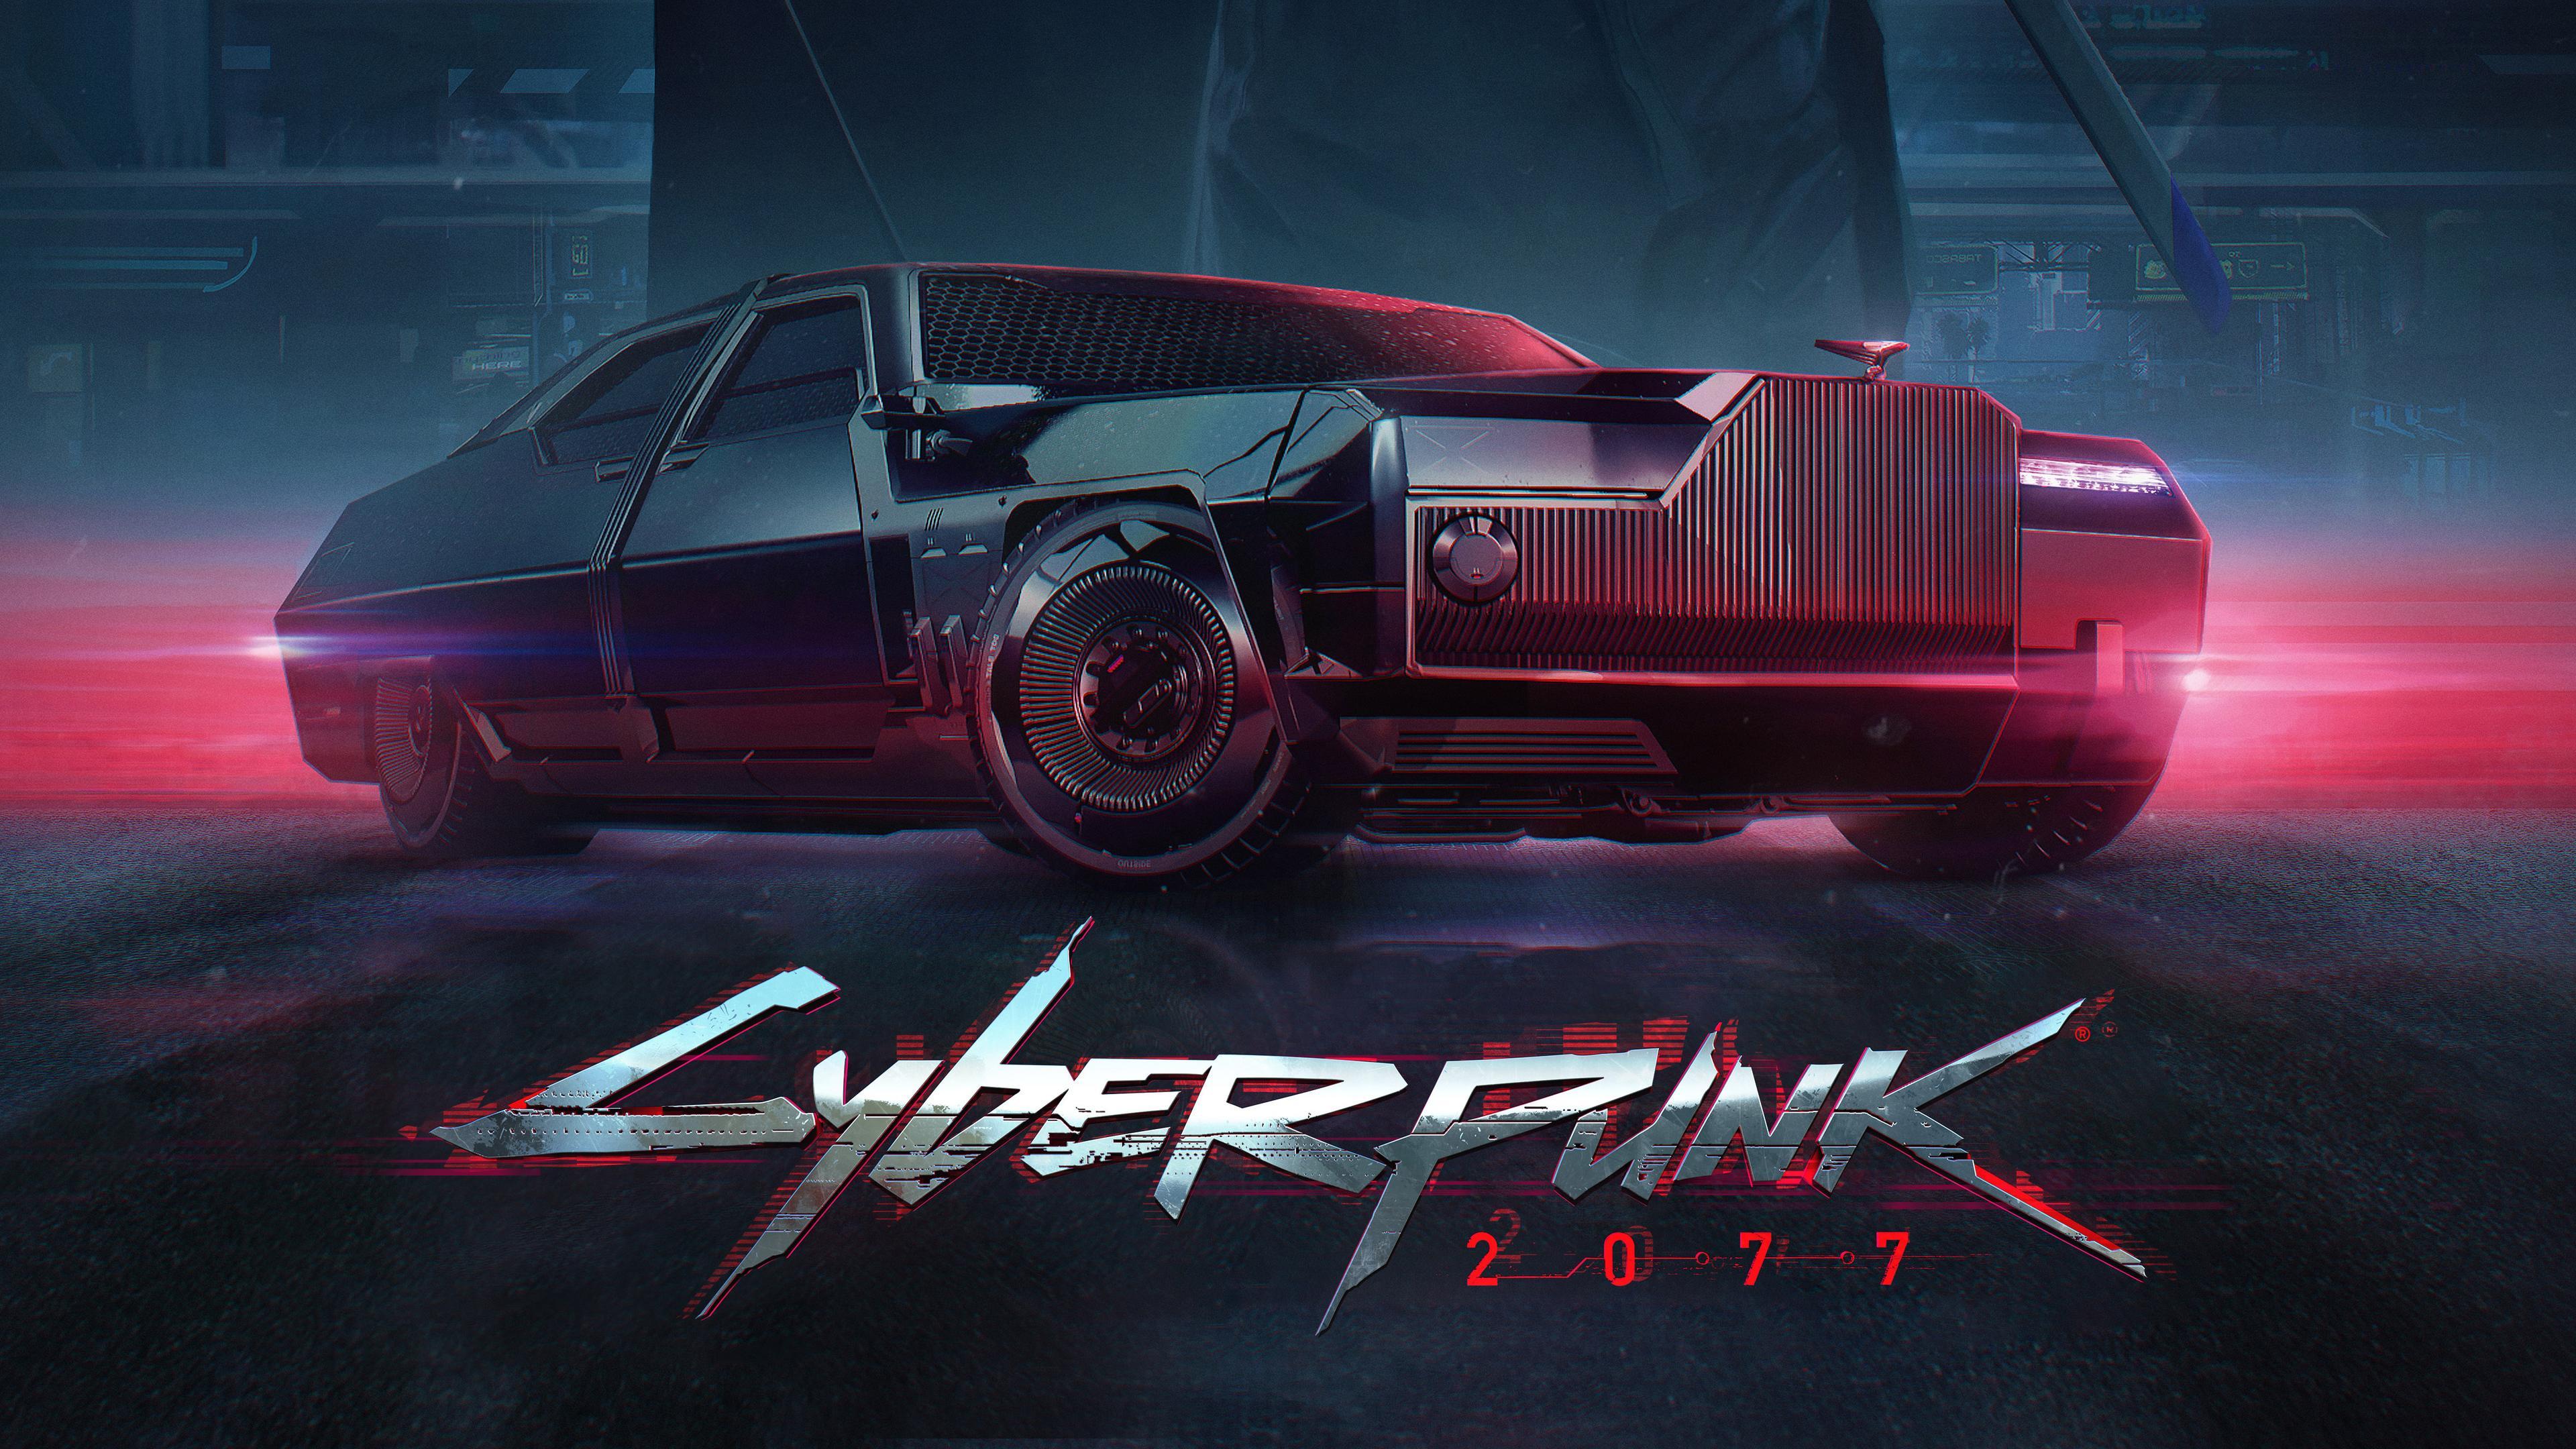 Wallpaper 4k Cyberpunk 2077 Poster 2019 games wallpaper, 4k